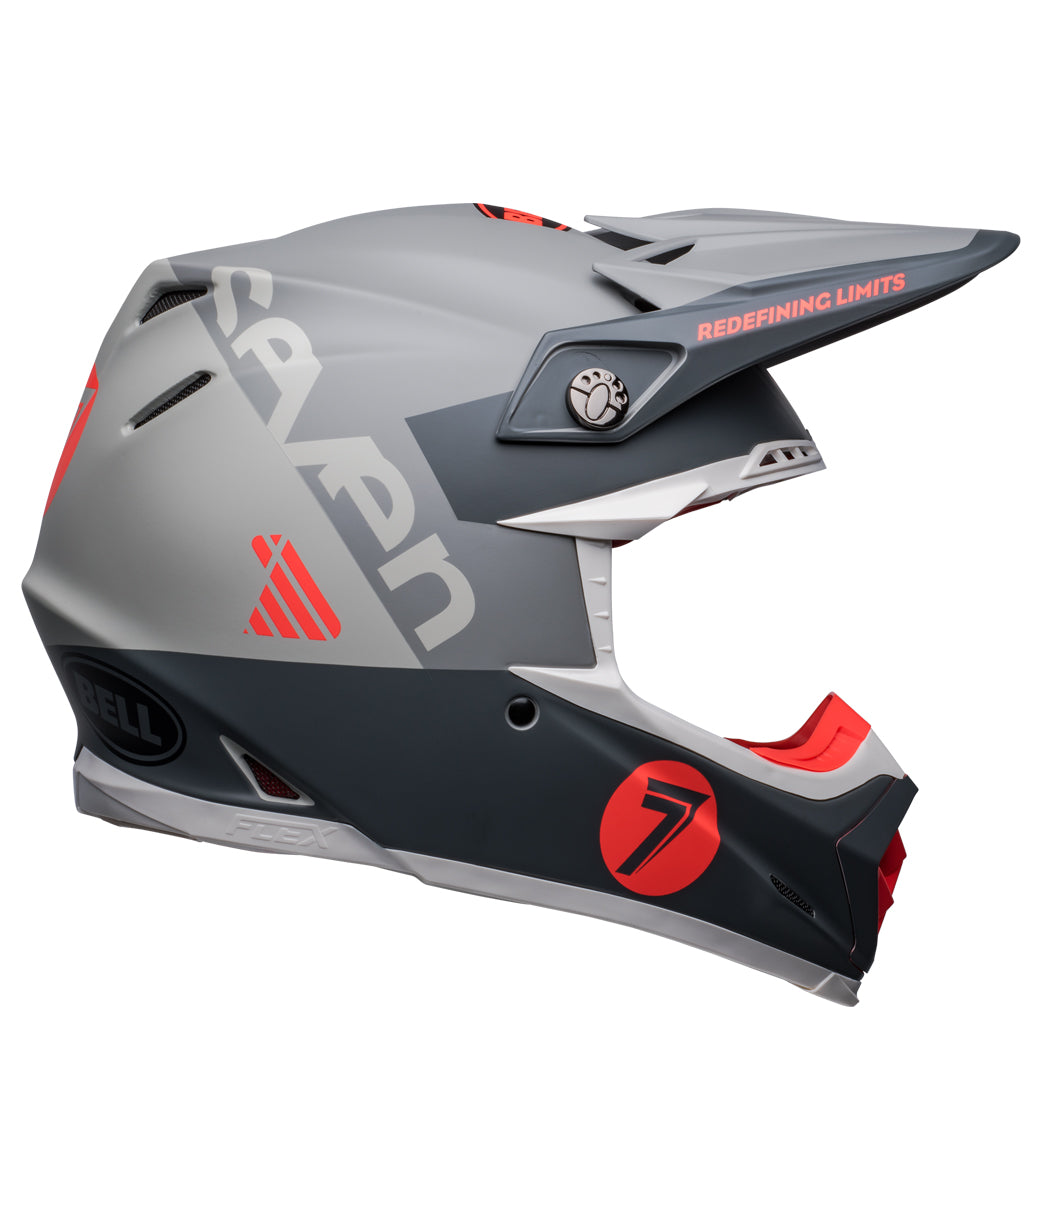 MOTO 9s Flex Seven Vanguard MT Helmet - Charcoal/Orange